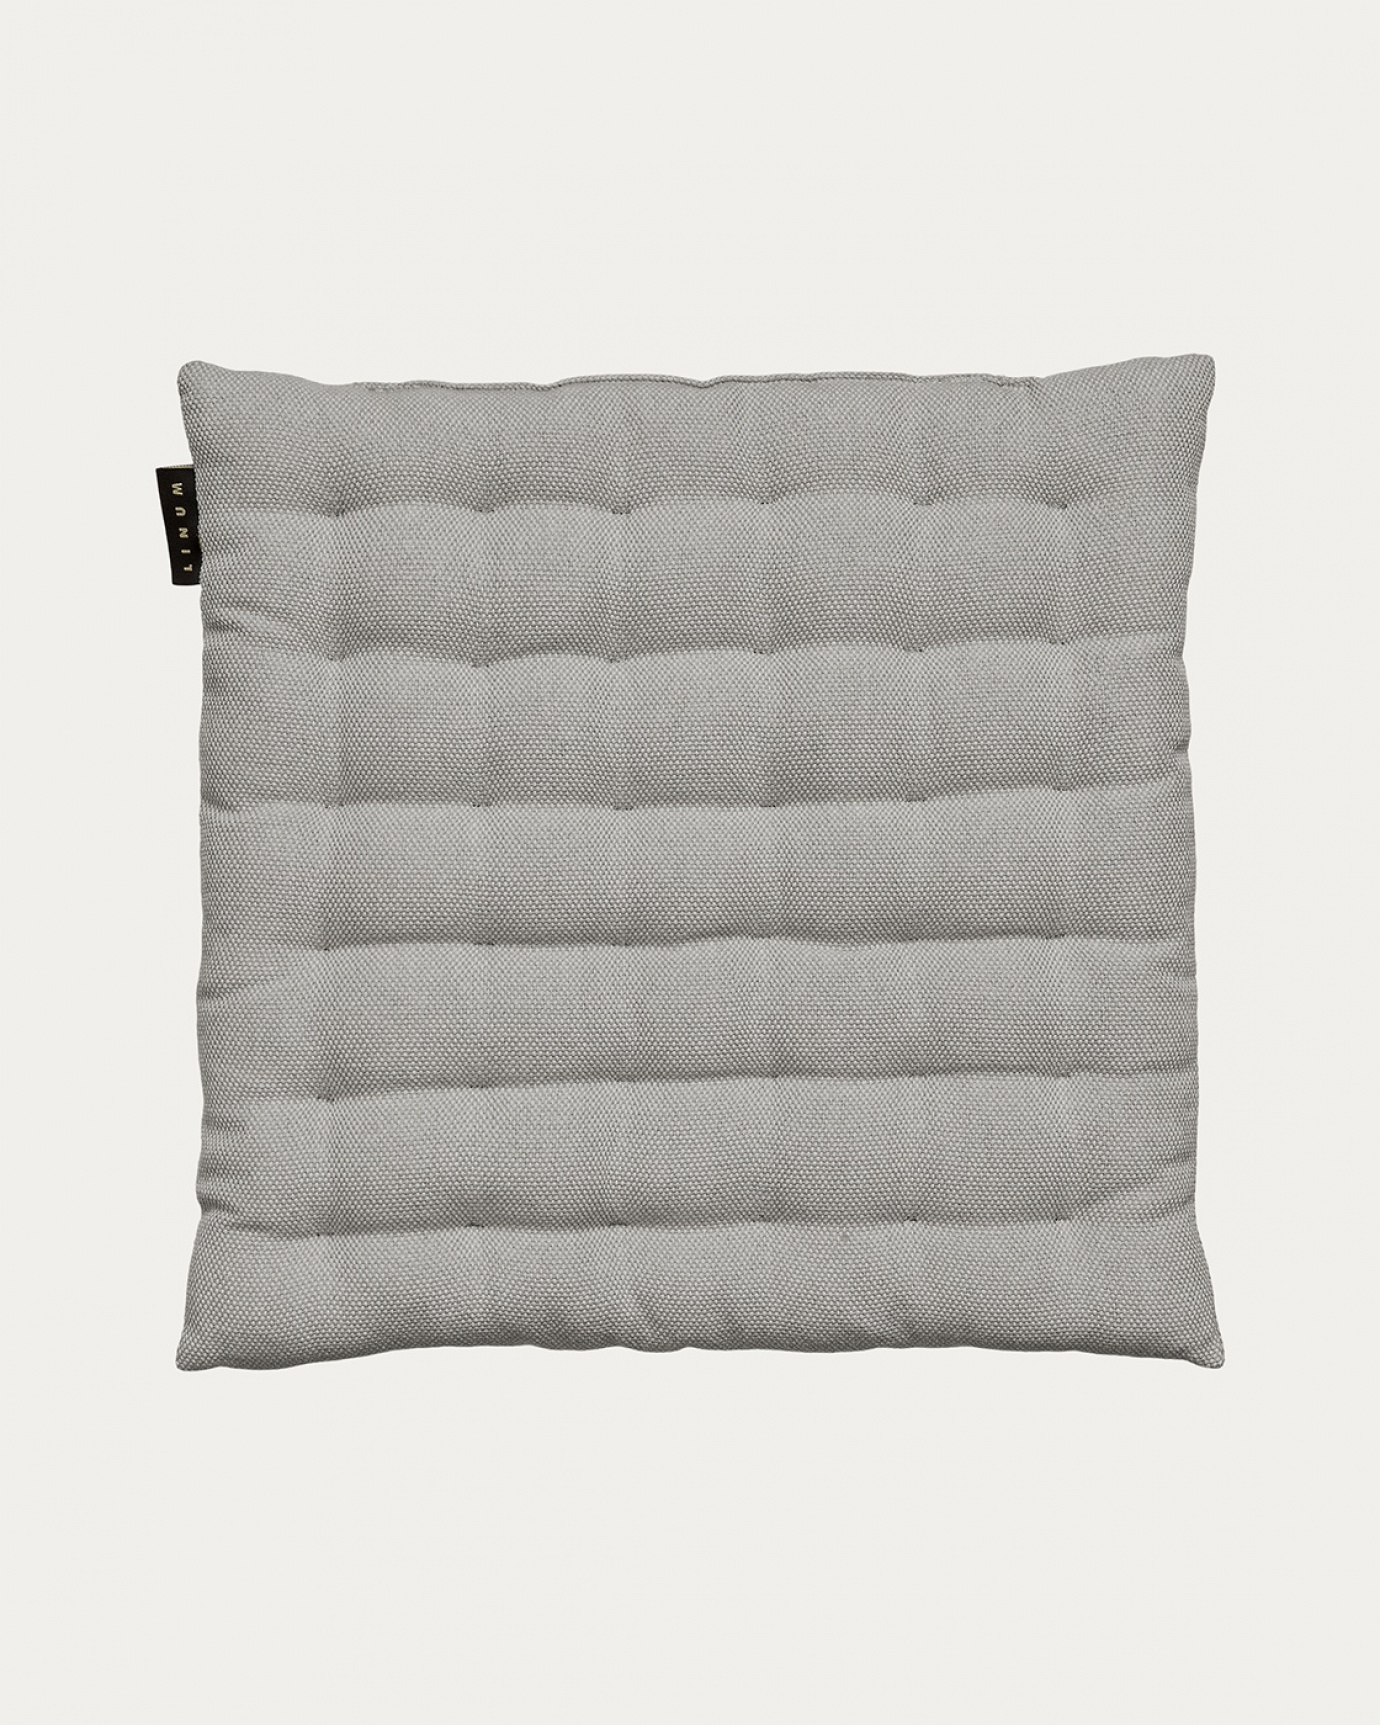 Produktbild hellgrau PEPPER Sitzkissen aus weicher Baumwolle mit Füllung aus recyceltem Polyester von LINUM DESIGN. Größe 40x40 cm.